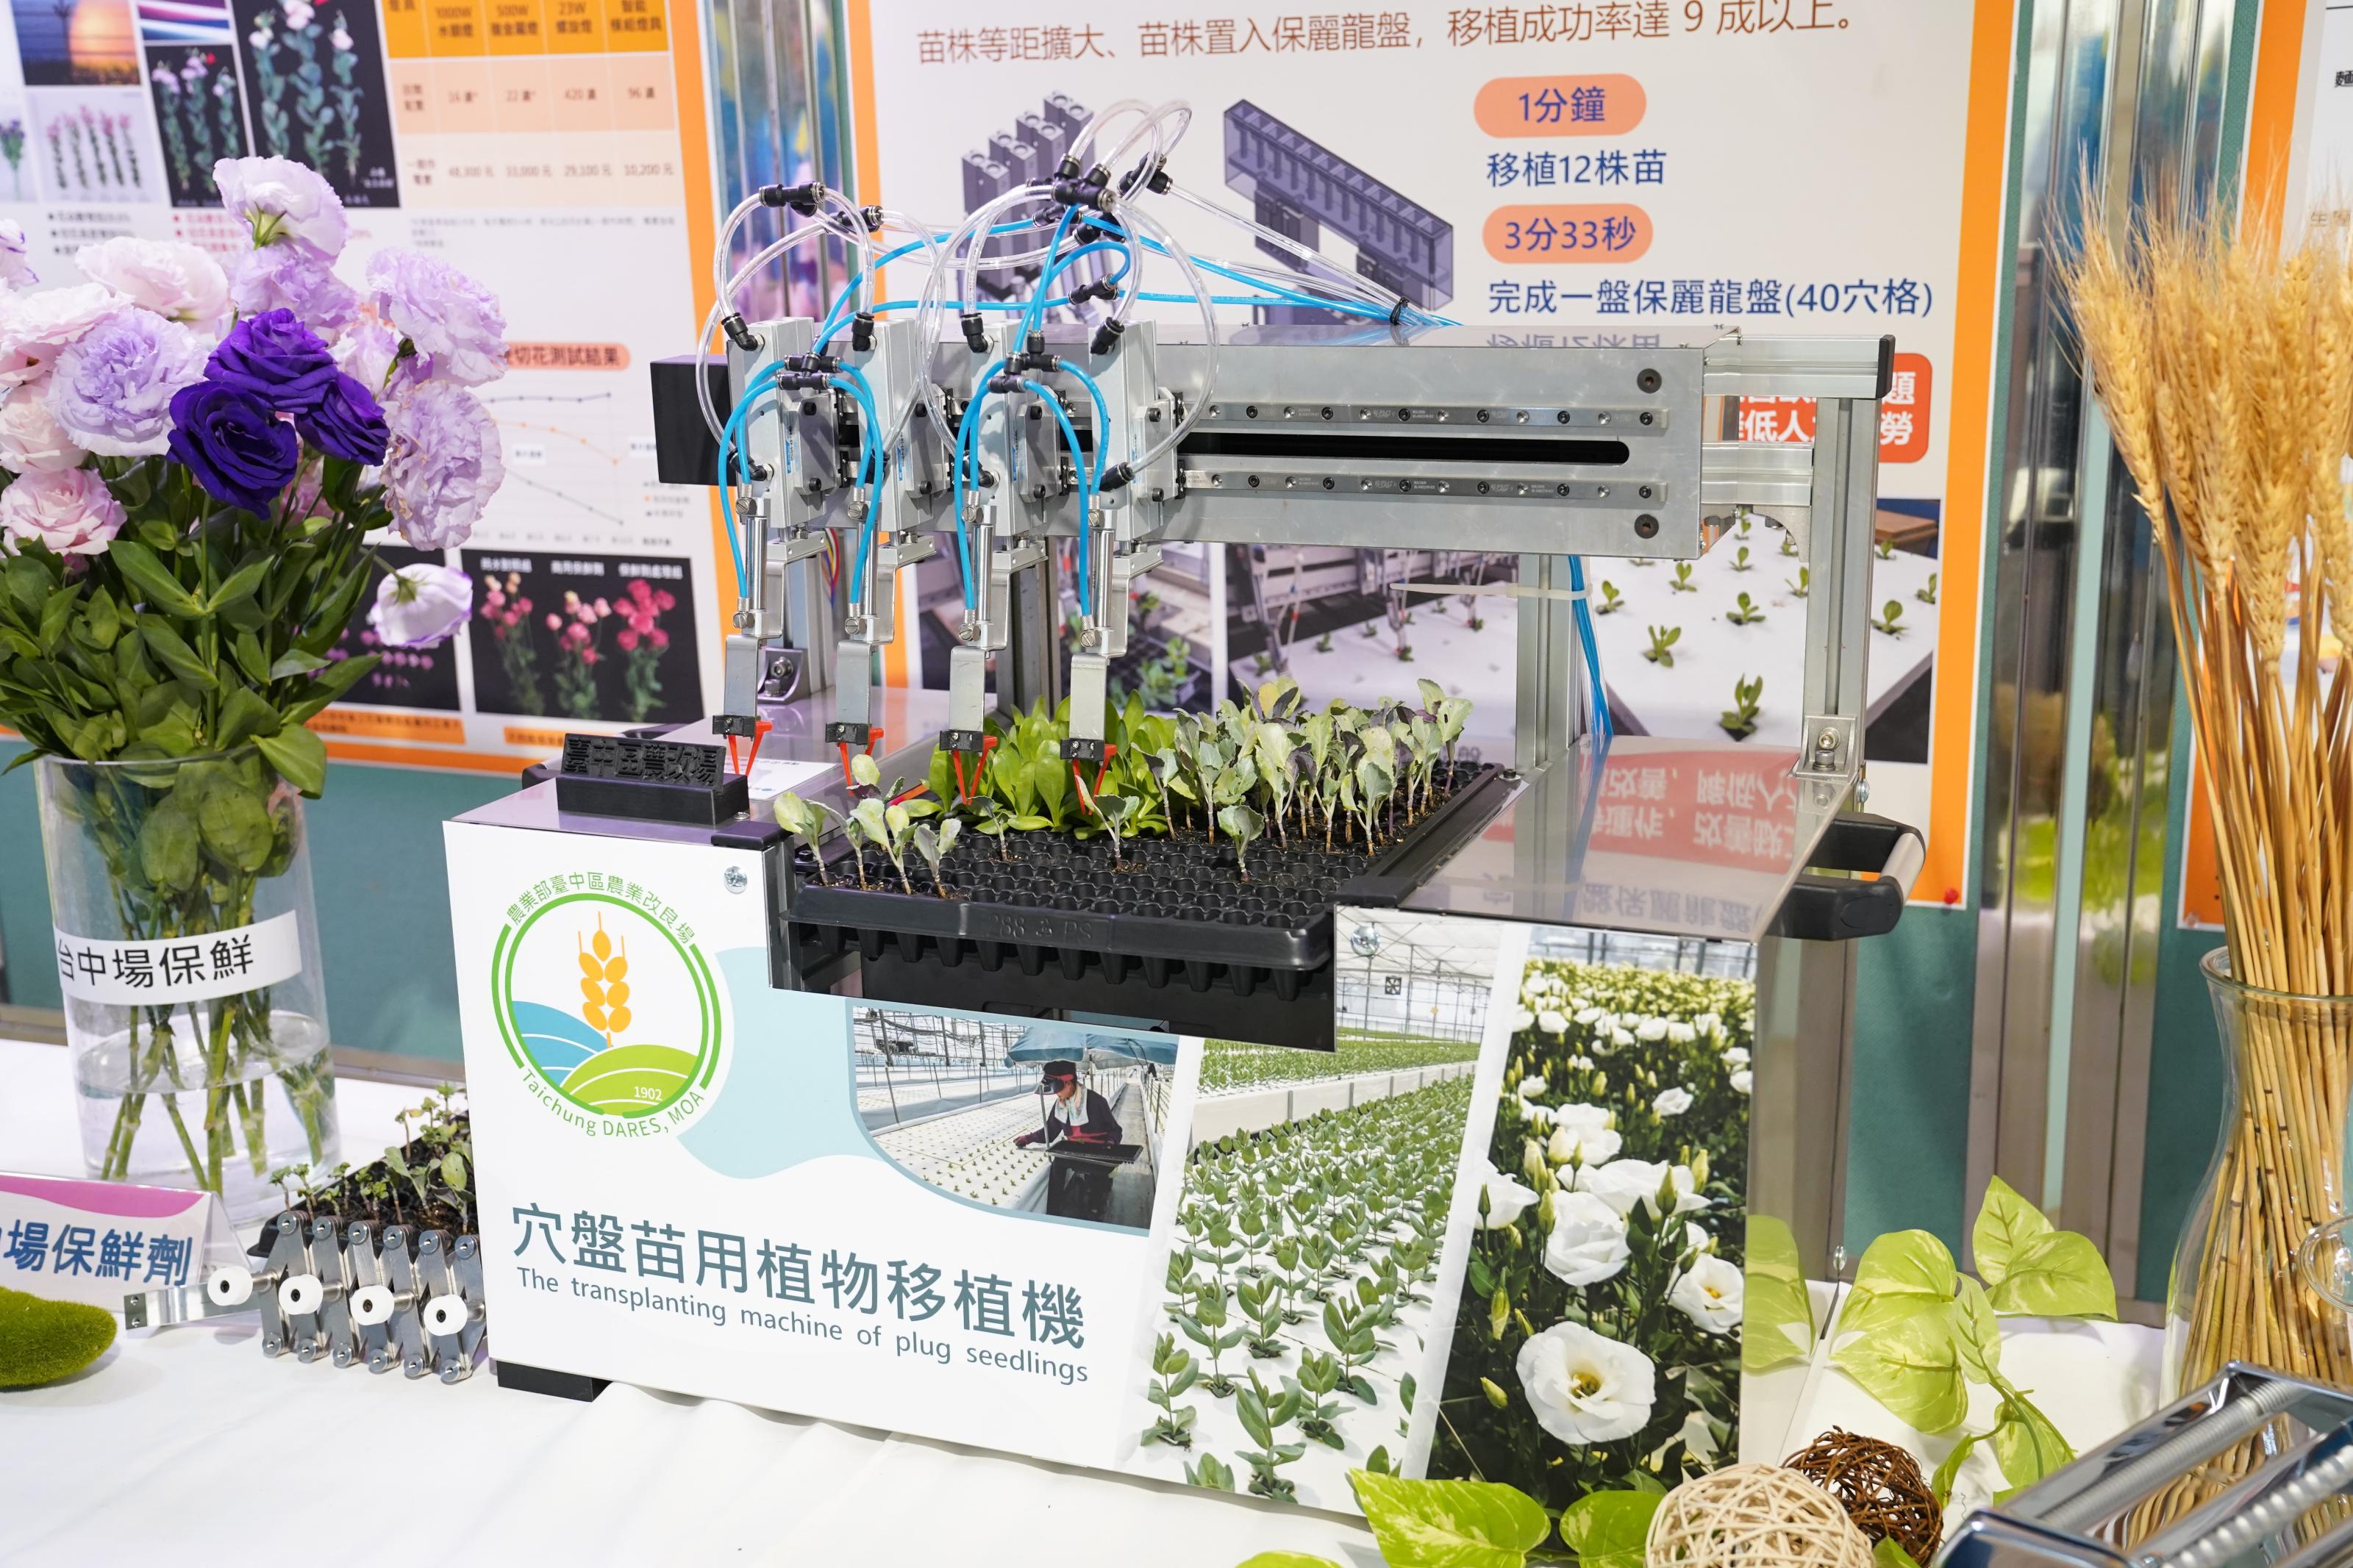 臺中農改場展示穴盤用植物植物移苗機